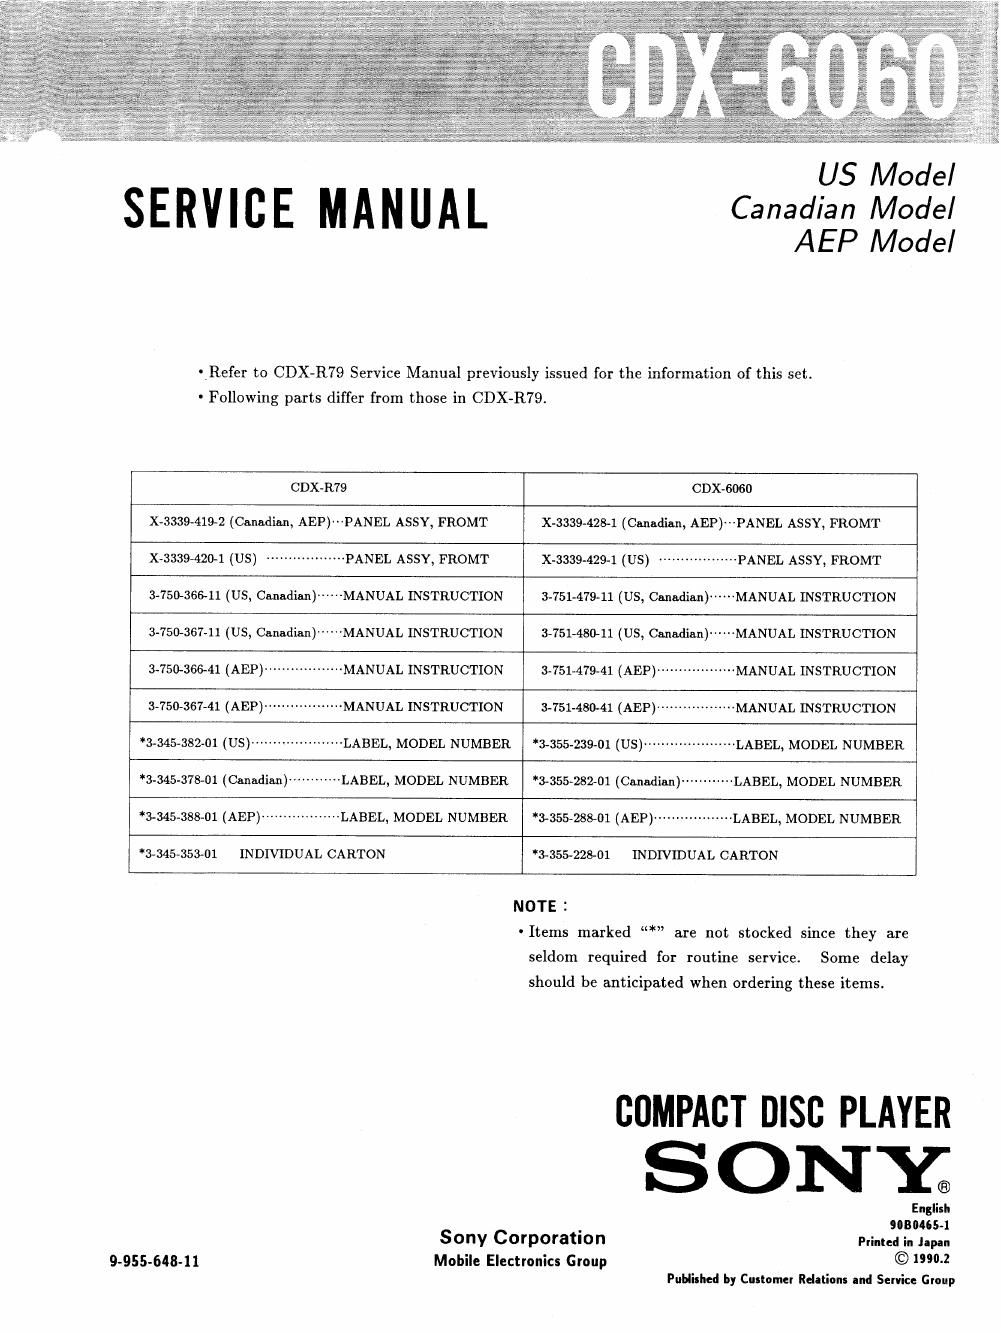 sony cdx 6060 service manual